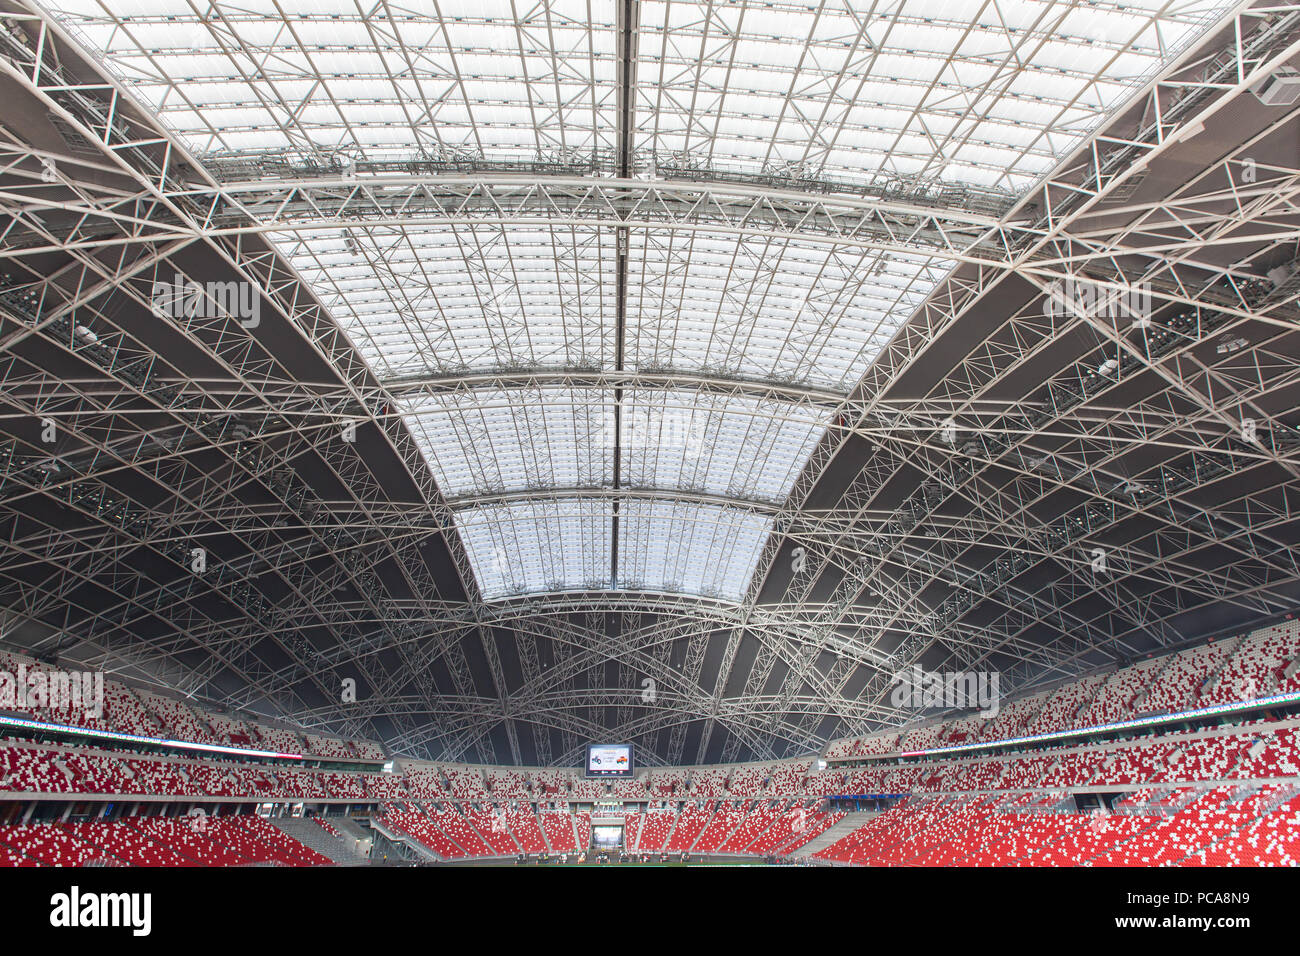 Massive indoor roof architecture design at Singapore Sports hub stadium. Stock Photo